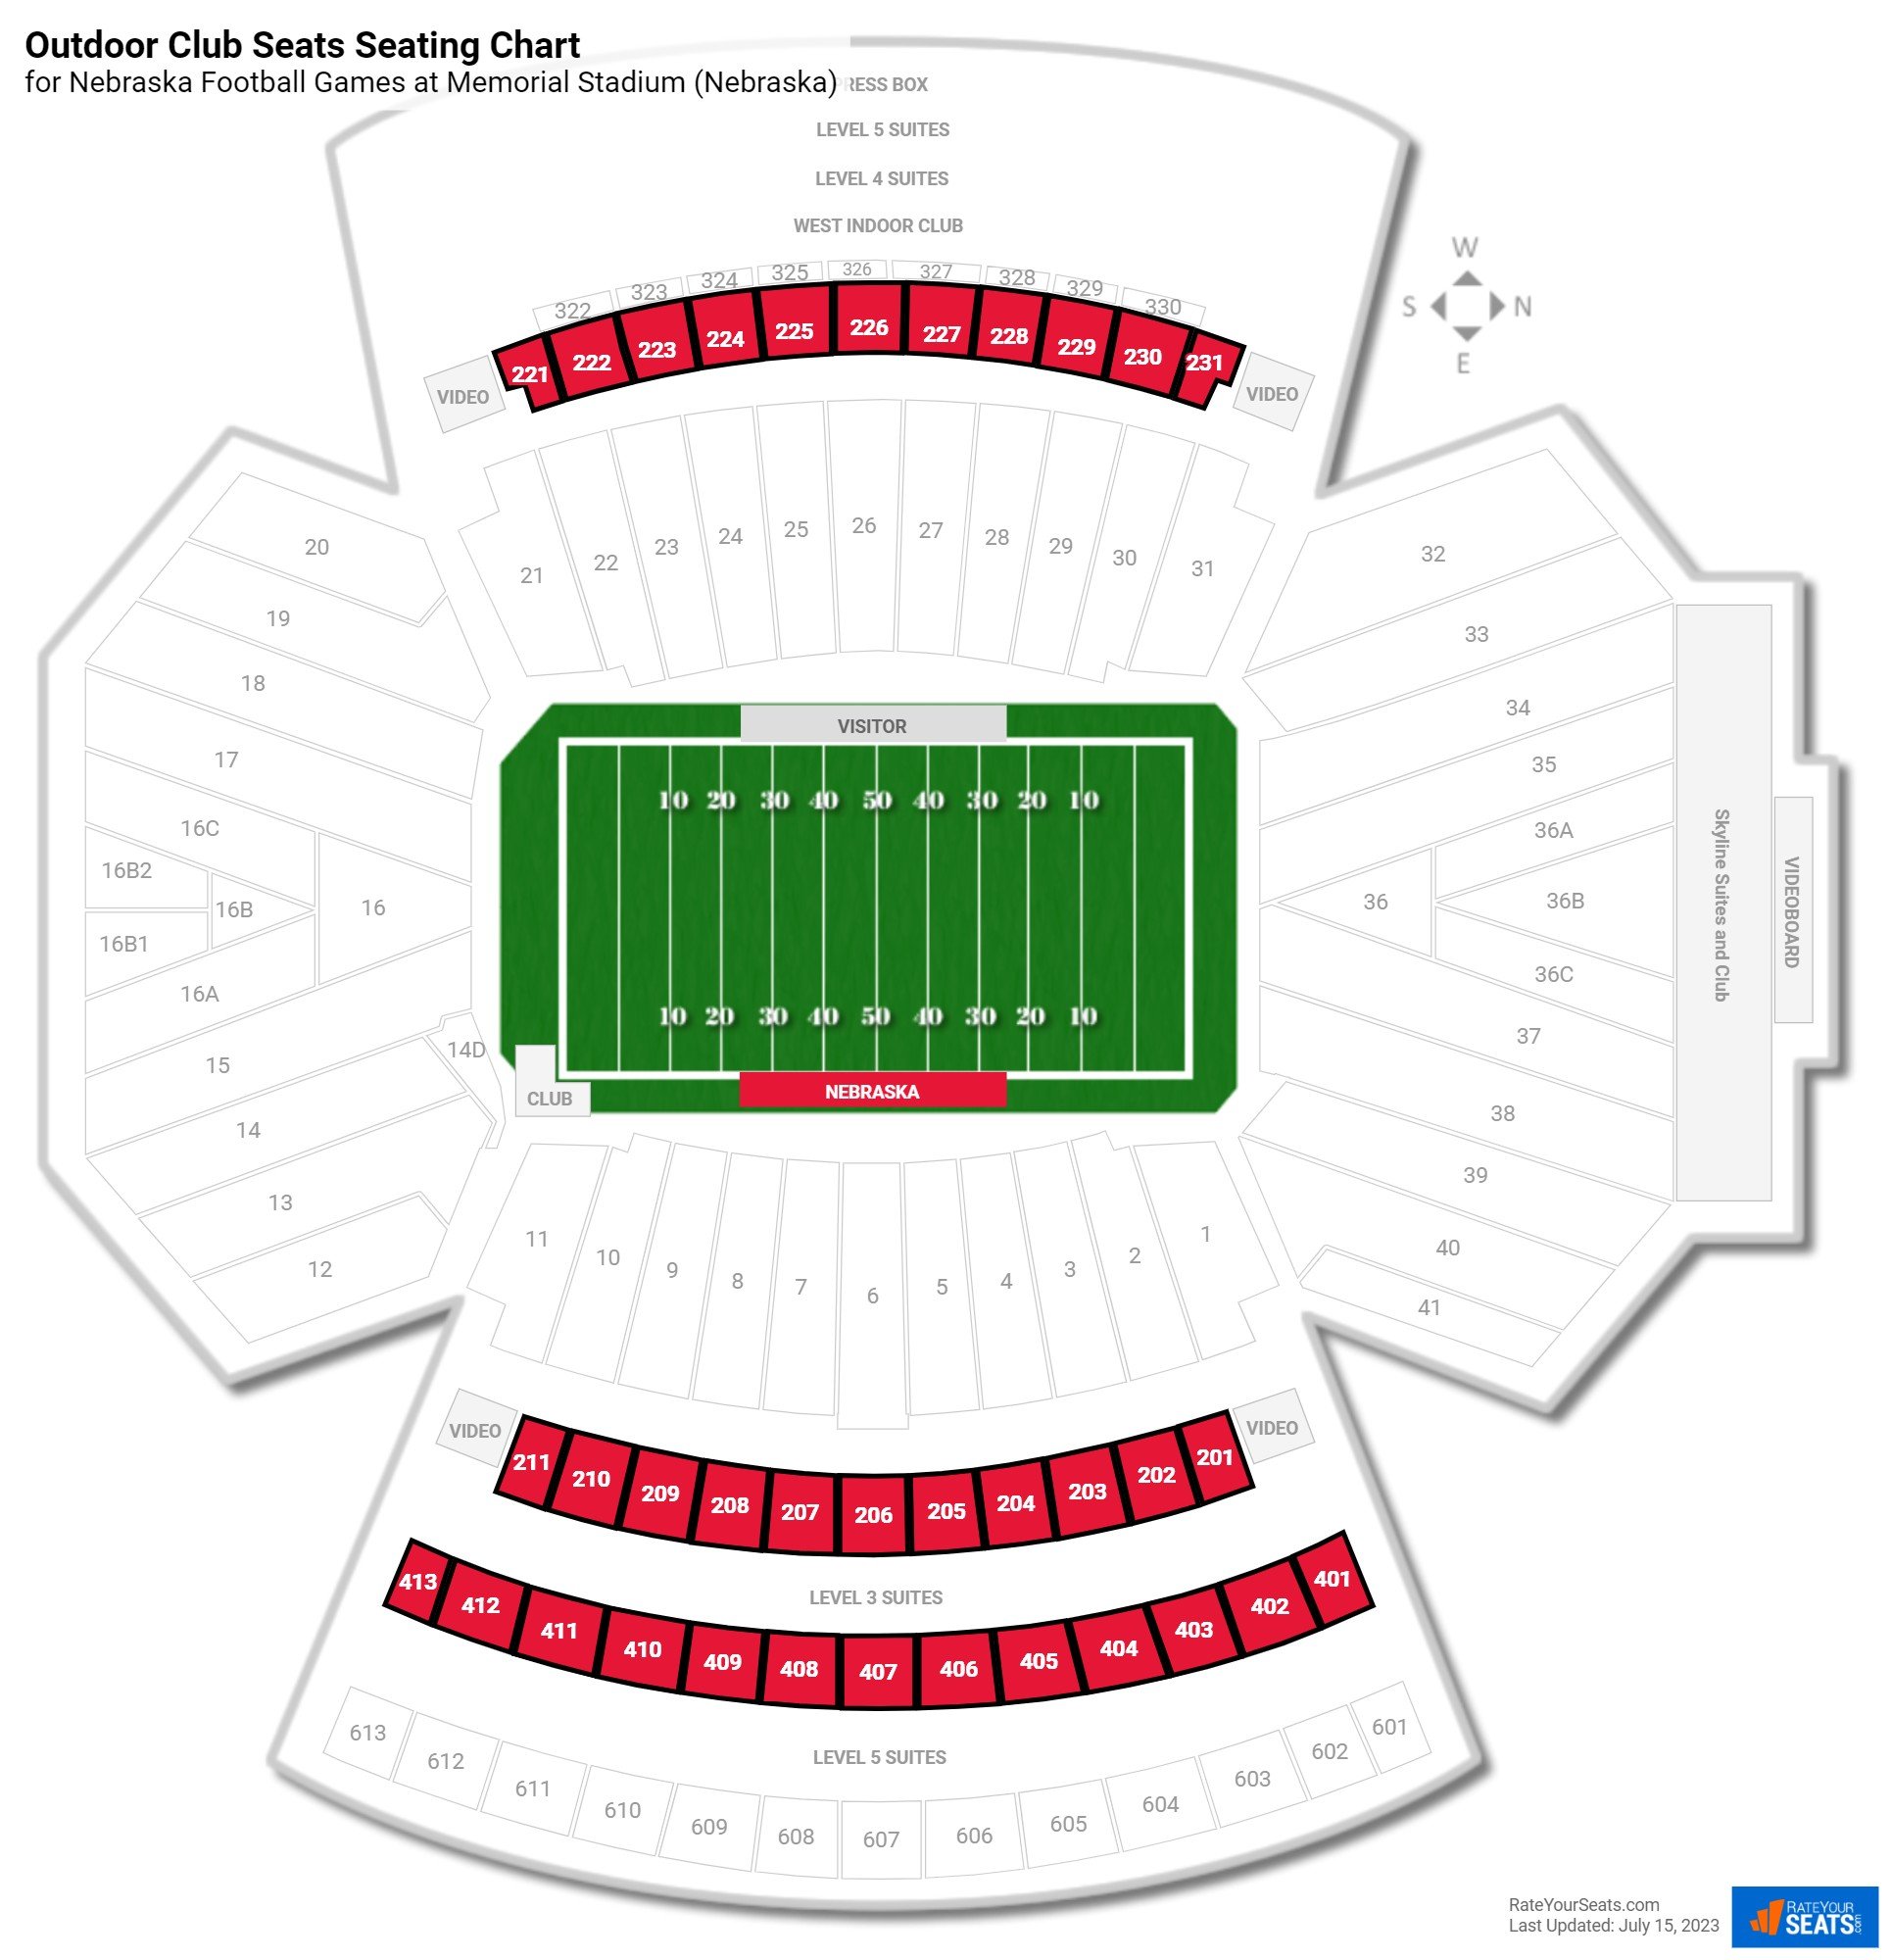 Nebraska Outdoor Club Seats Seating Chart at Memorial Stadium (Nebraska)